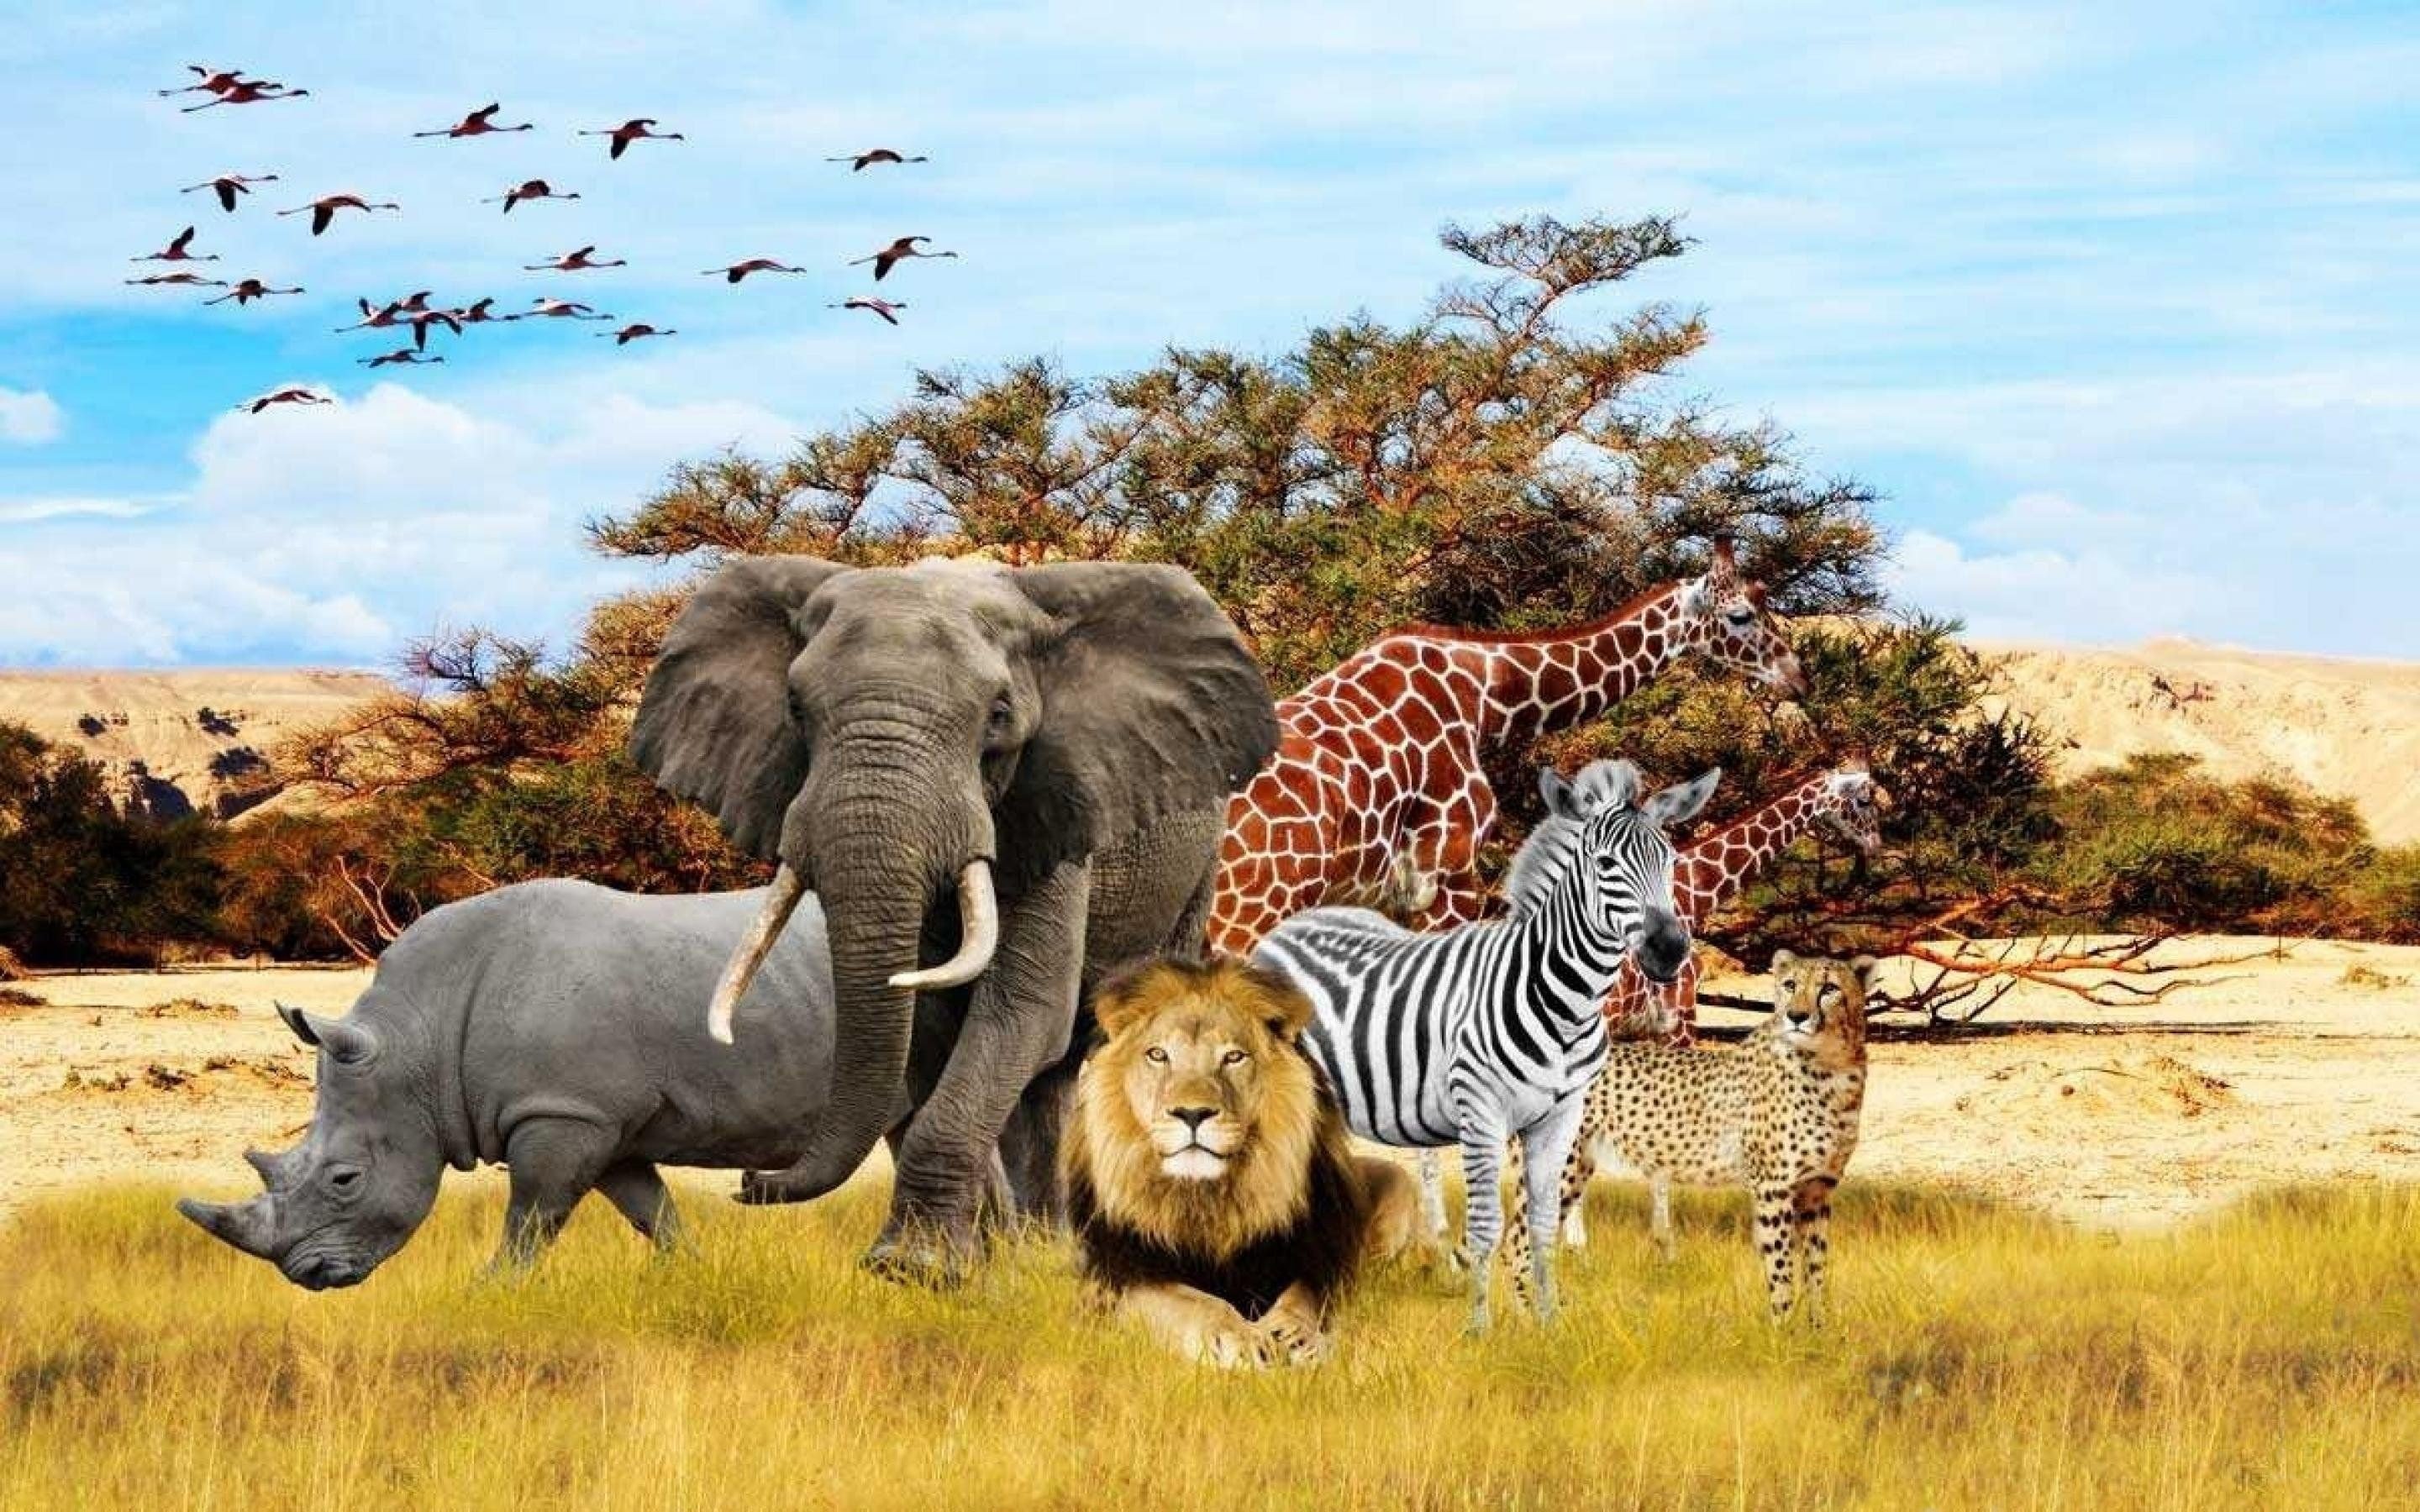 safari vs jungle theme